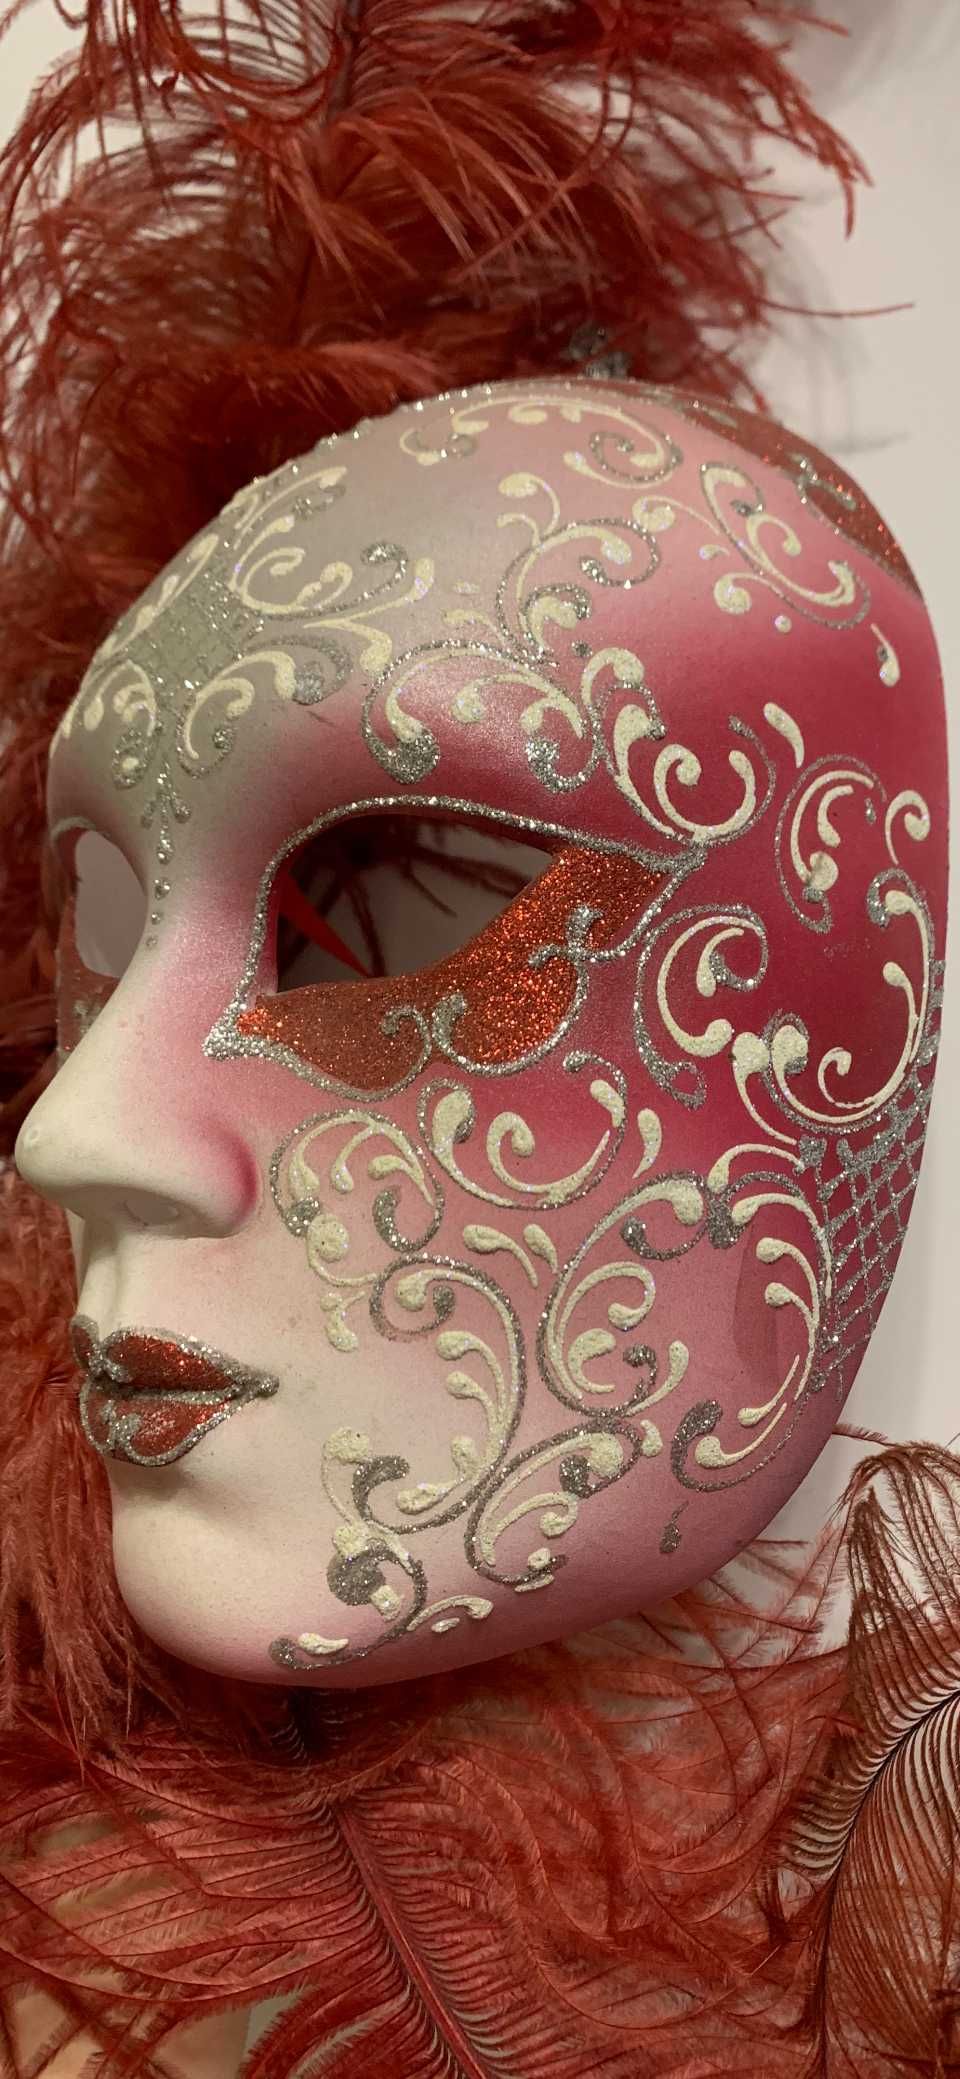 Венецианская декоративная маска